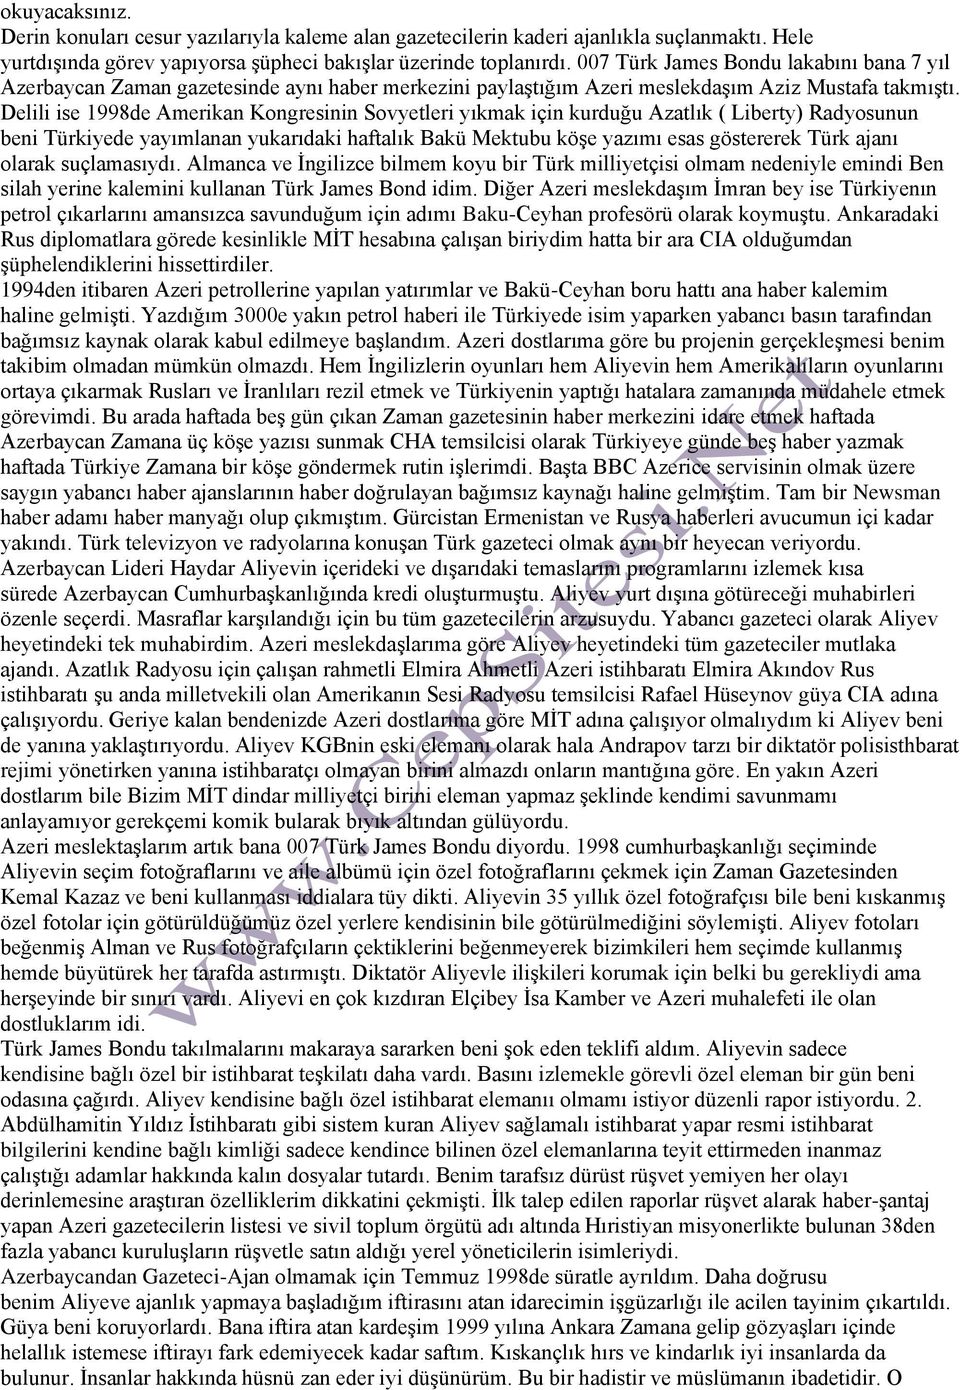 Delili ise 1998de Amerikan Kongresinin Sovyetleri yıkmak için kurduğu Azatlık ( Liberty) Radyosunun beni Türkiyede yayımlanan yukarıdaki haftalık Bakü Mektubu köşe yazımı esas göstererek Türk ajanı